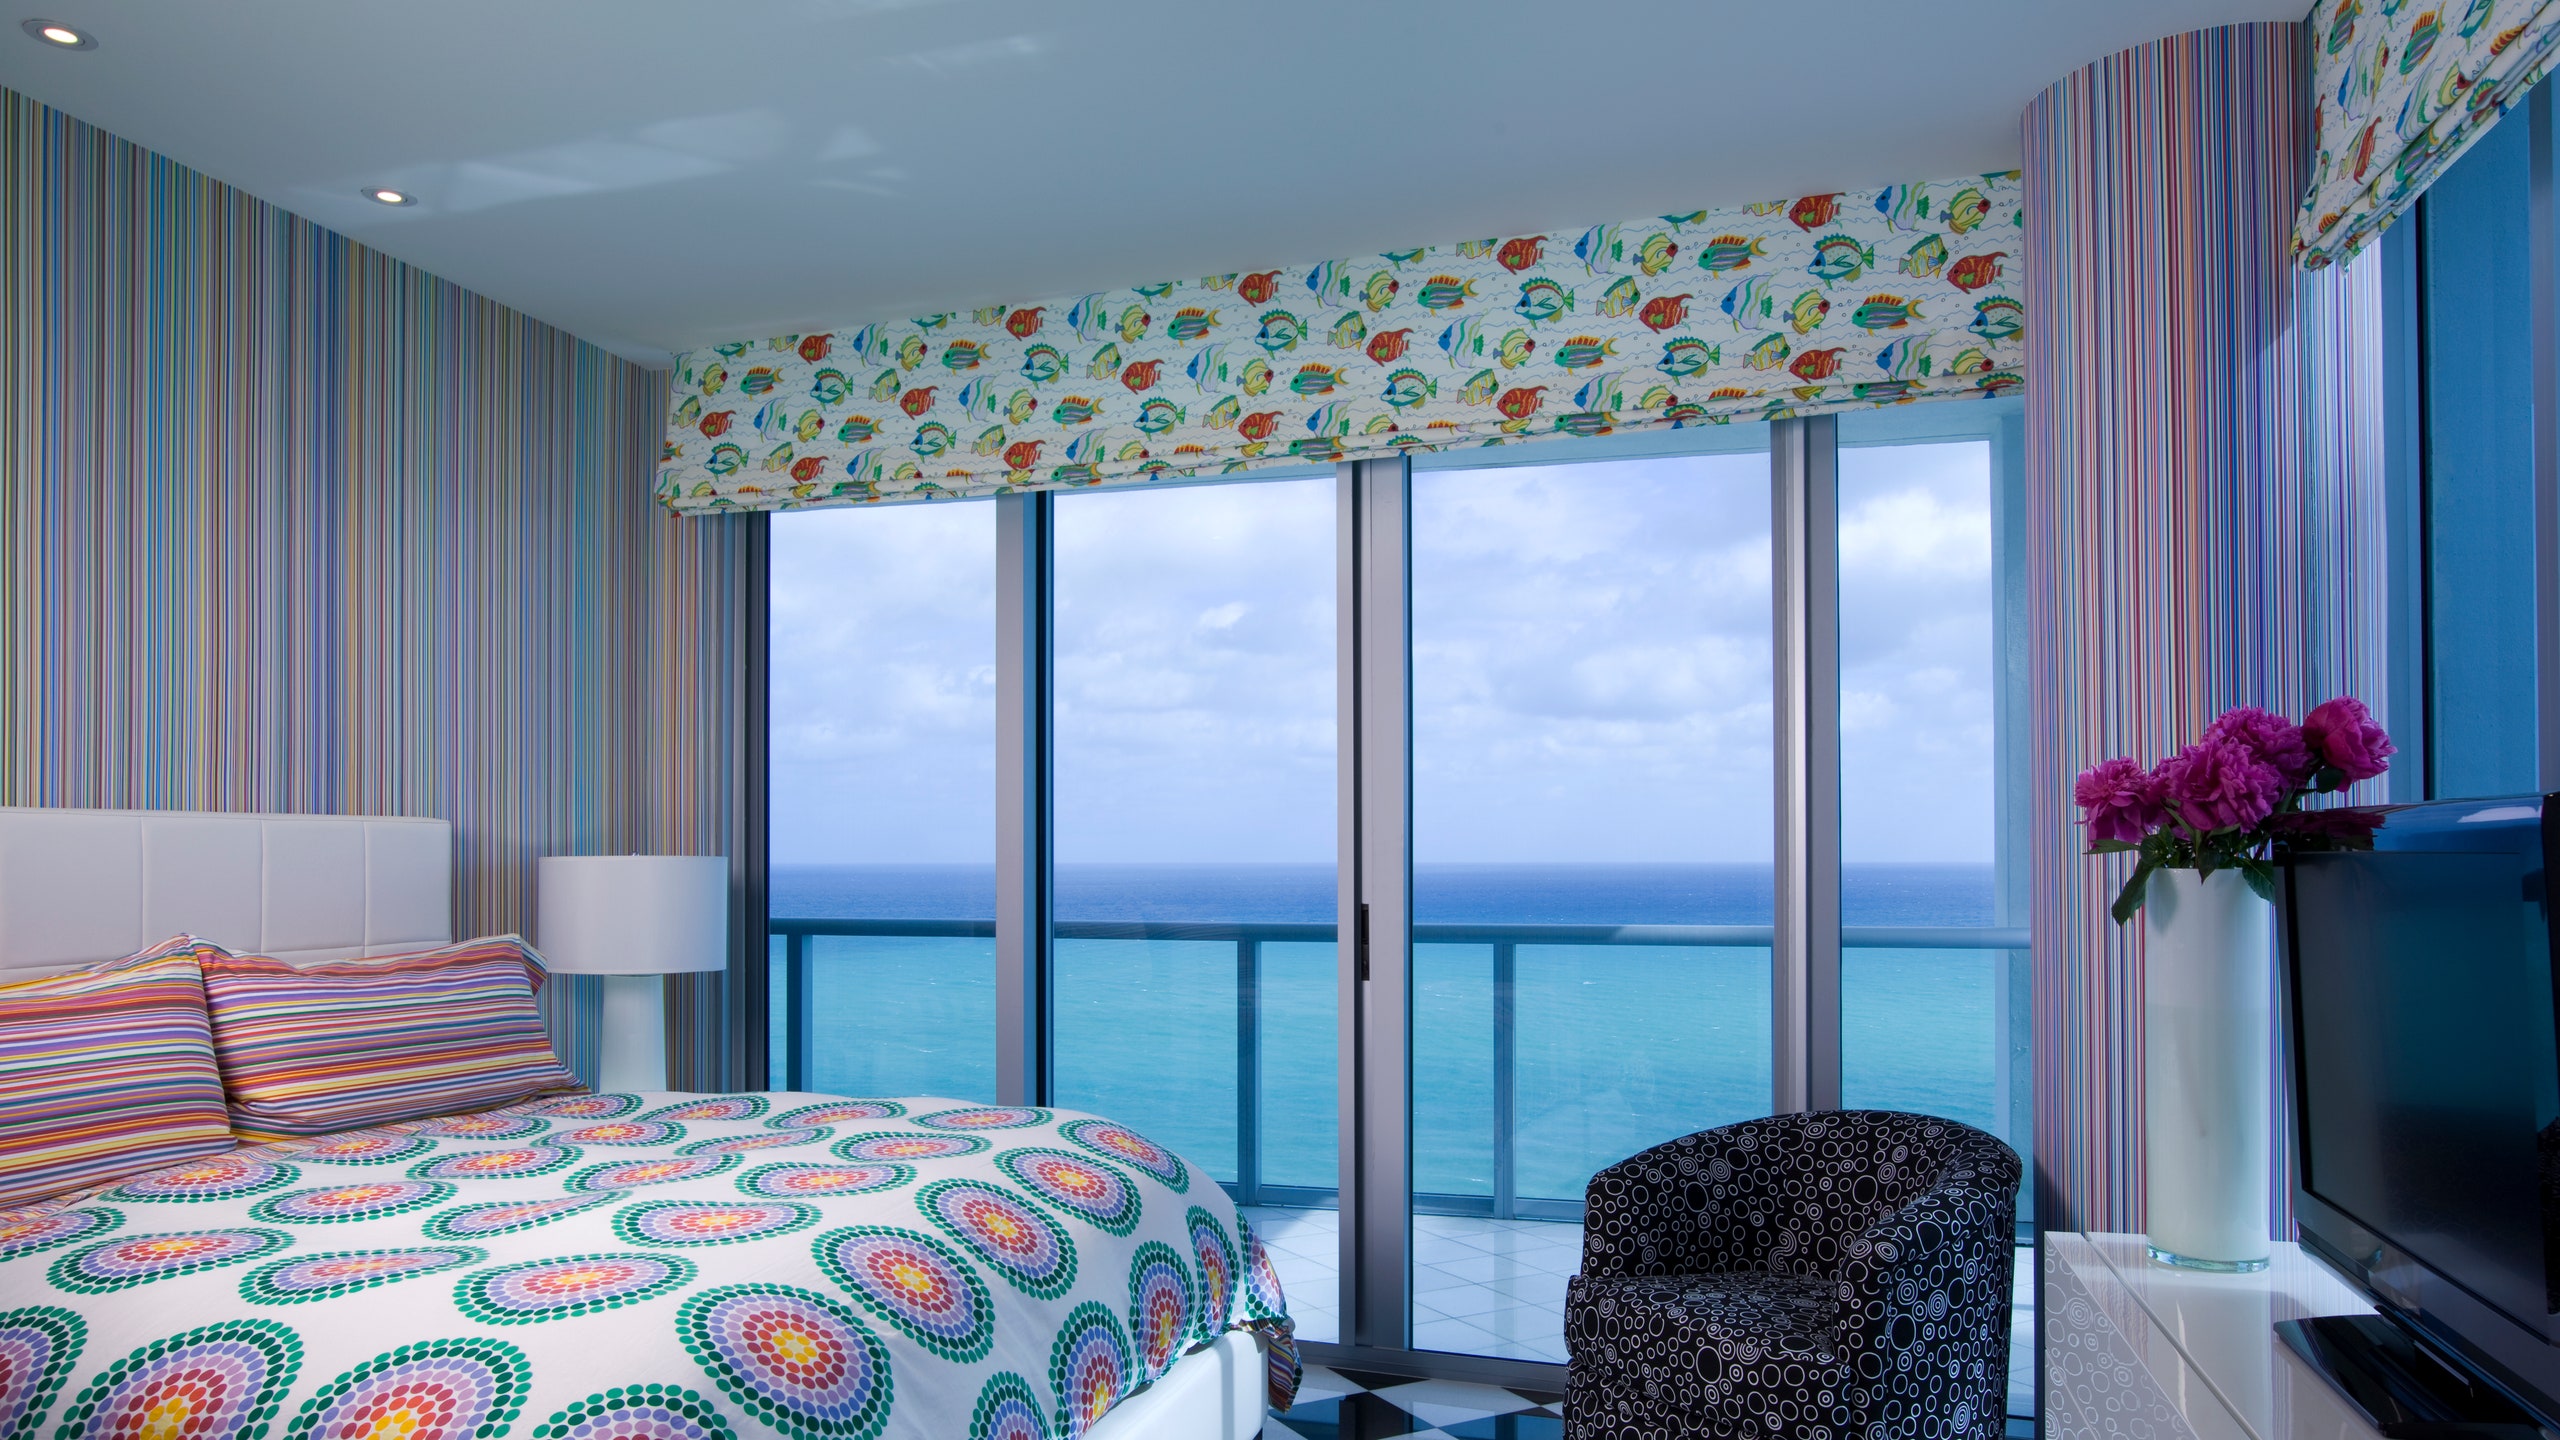 Квартира «в горошек» в Майами оформленная дизайнером Кристофером Коулменом | Admagazine